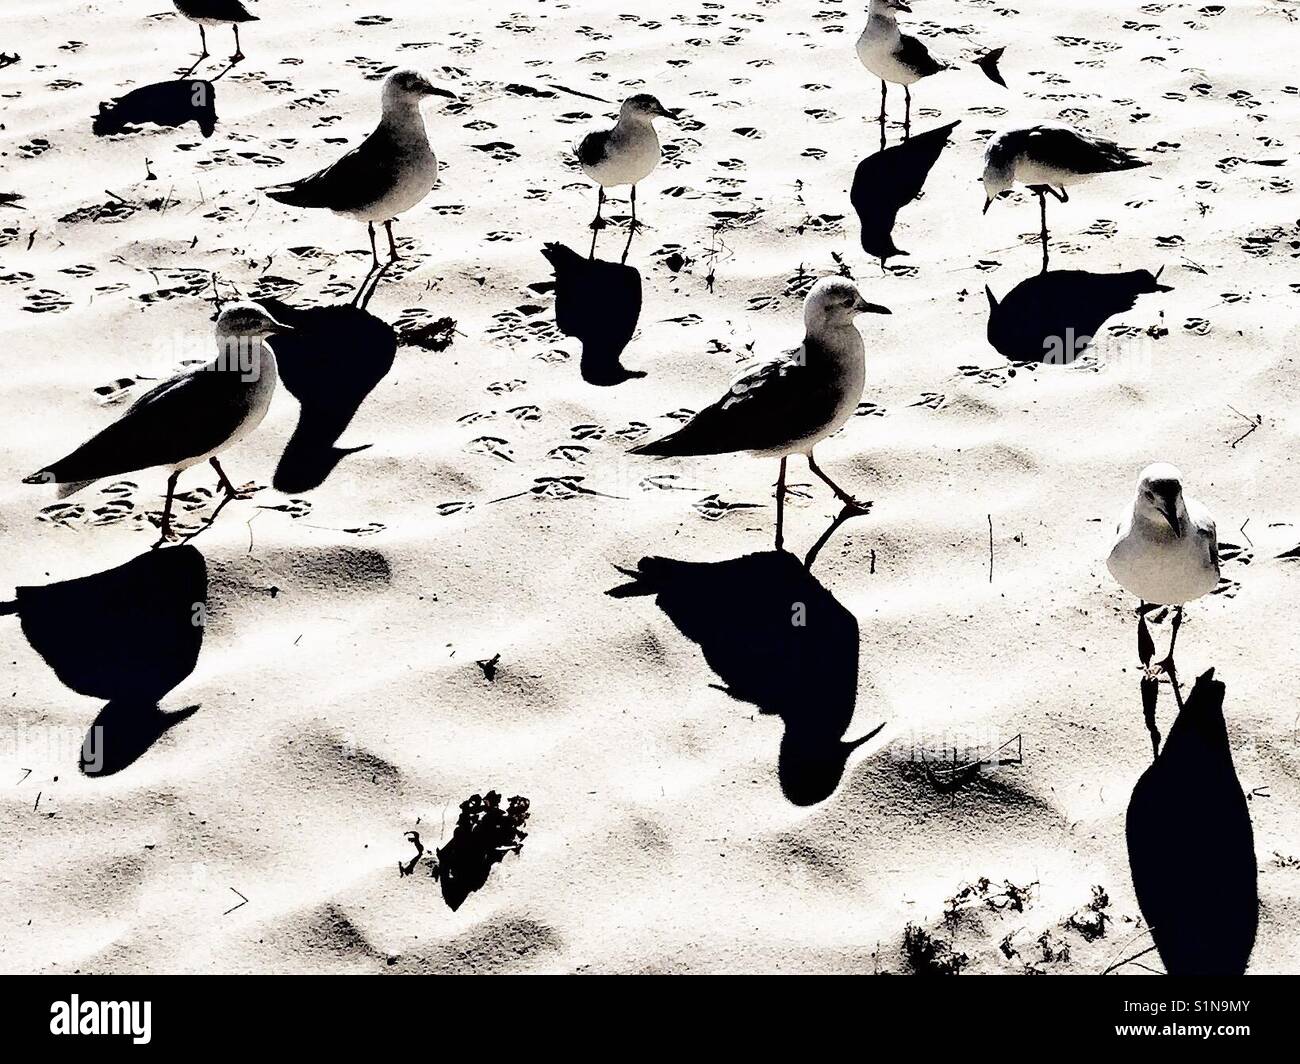 Flock of seagulls on beach projettent de grandes ombres sur le sable.. Gros plan, shoalhaven Jervis bay, Australie Banque D'Images